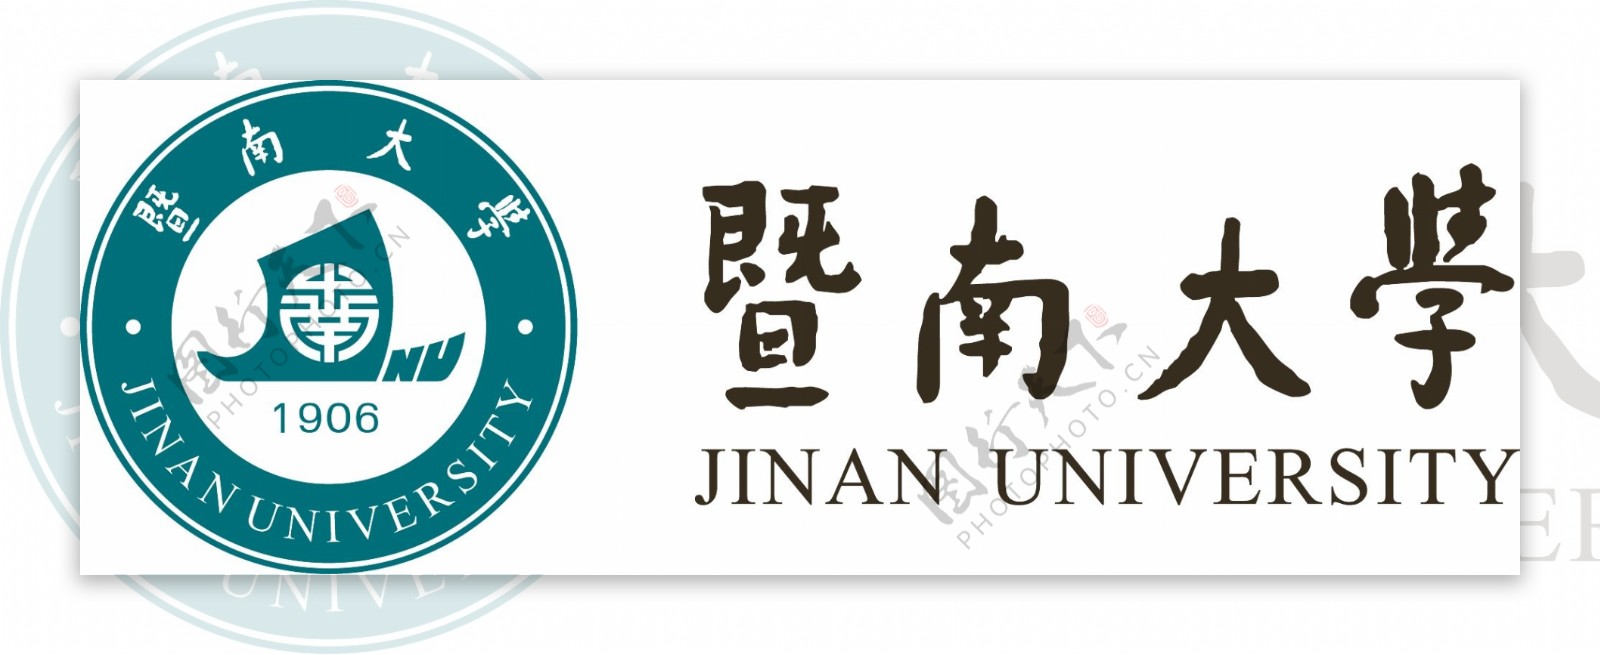 暨南大学logo图片